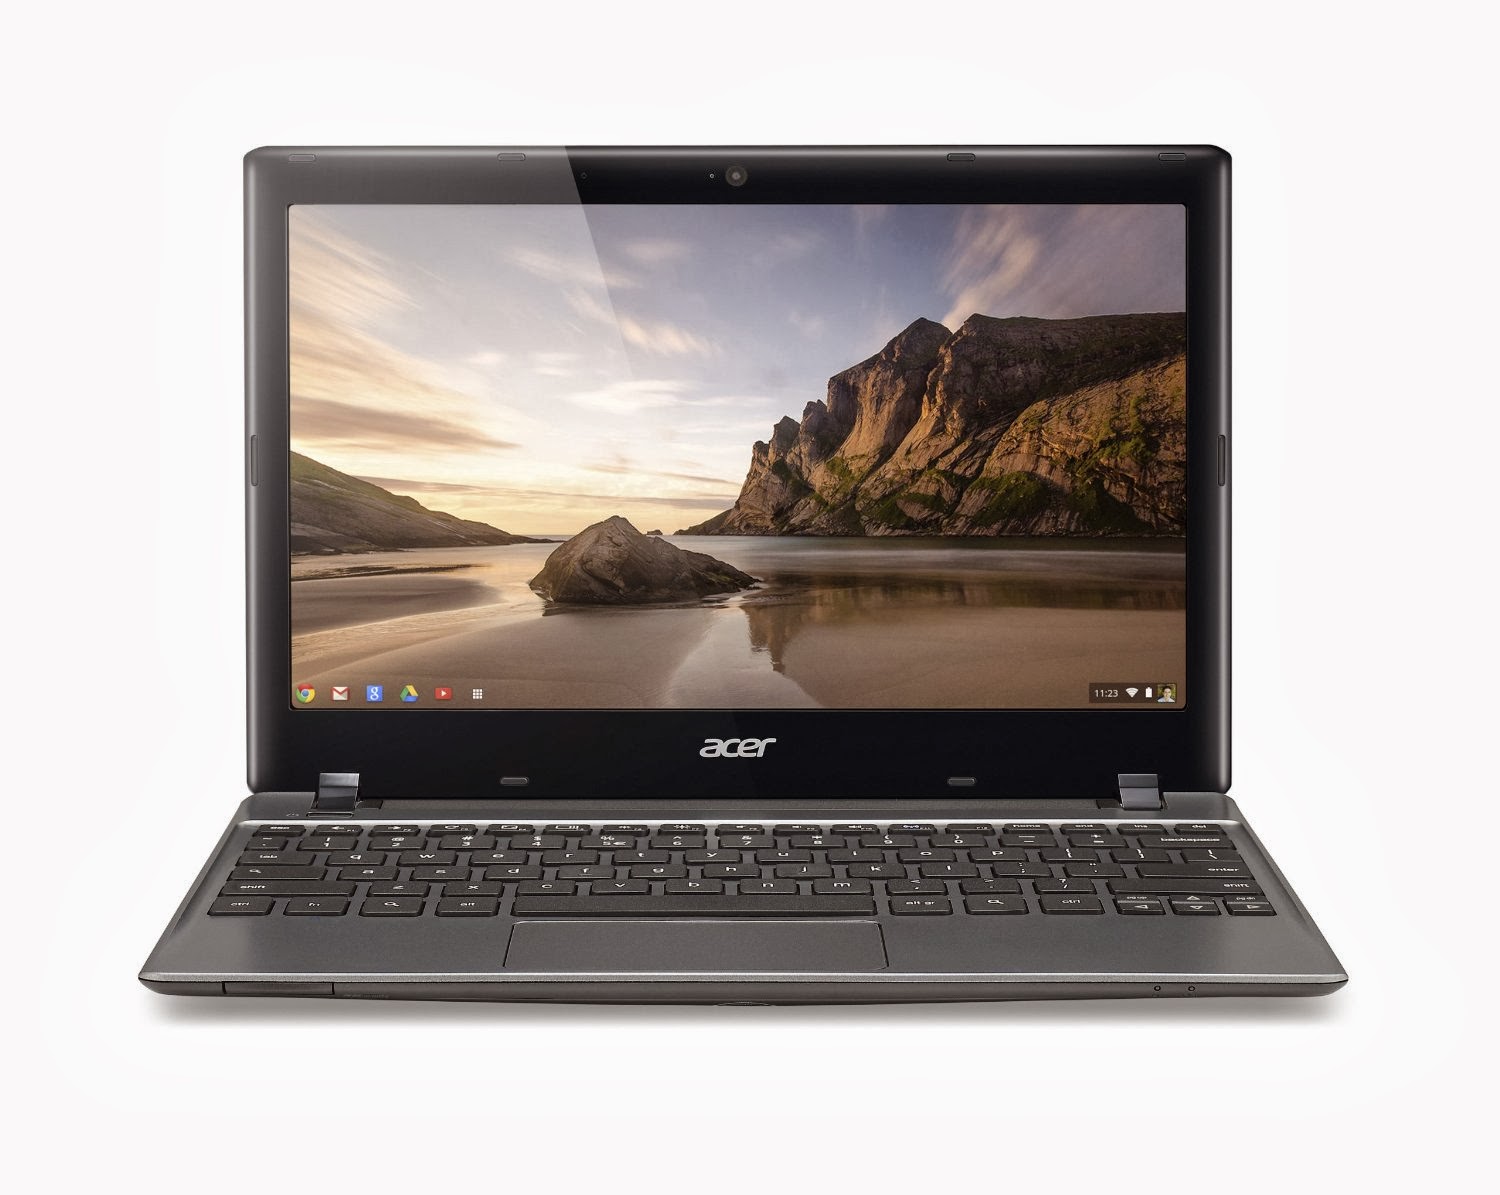 Acer Laptop Deals 2013: ASUS 1015E-DS01 10.1-Inch Deals